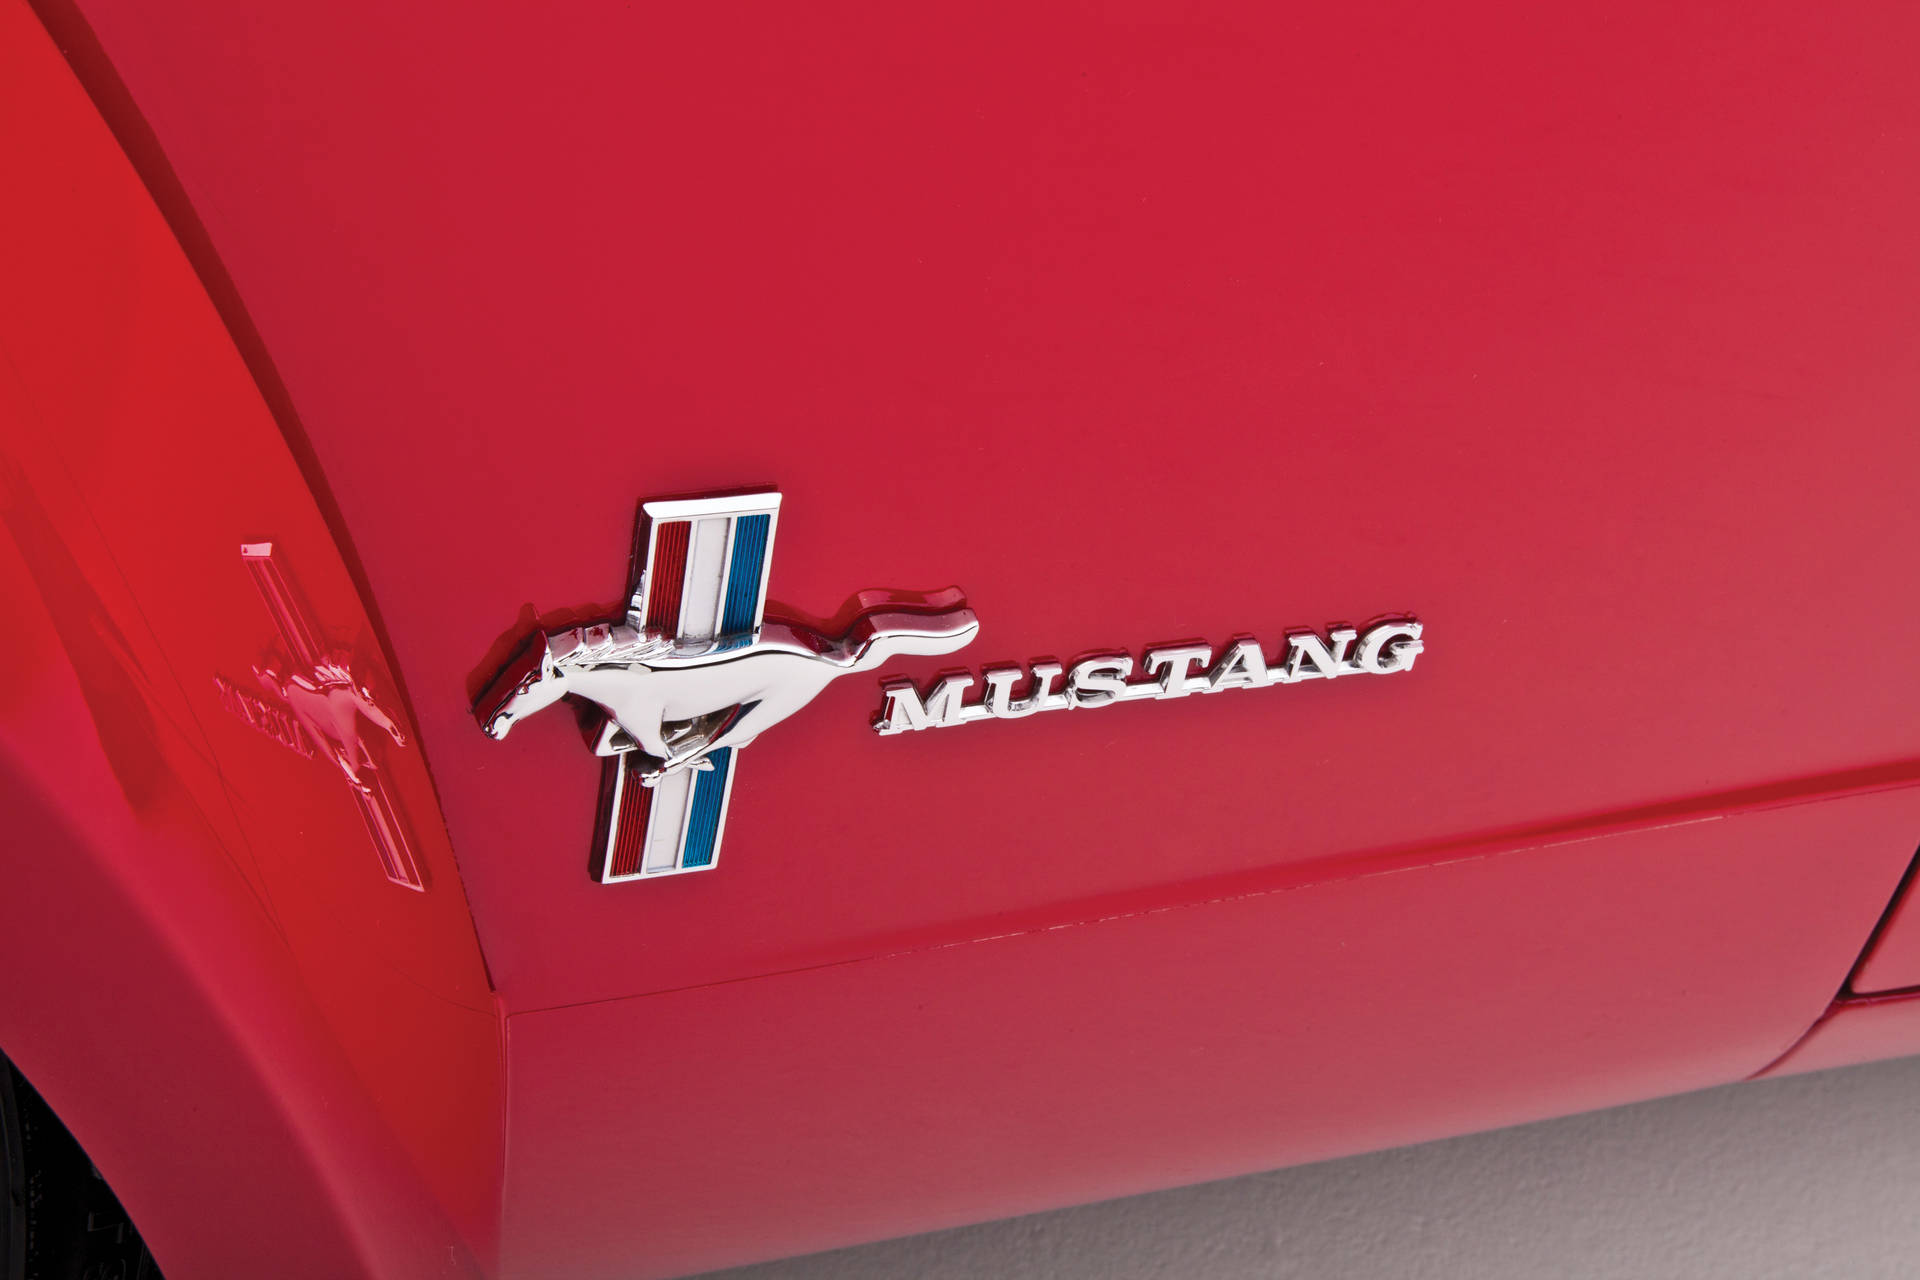 Logotipodo Mustang Em Hd, Com Zoom. Papel de Parede